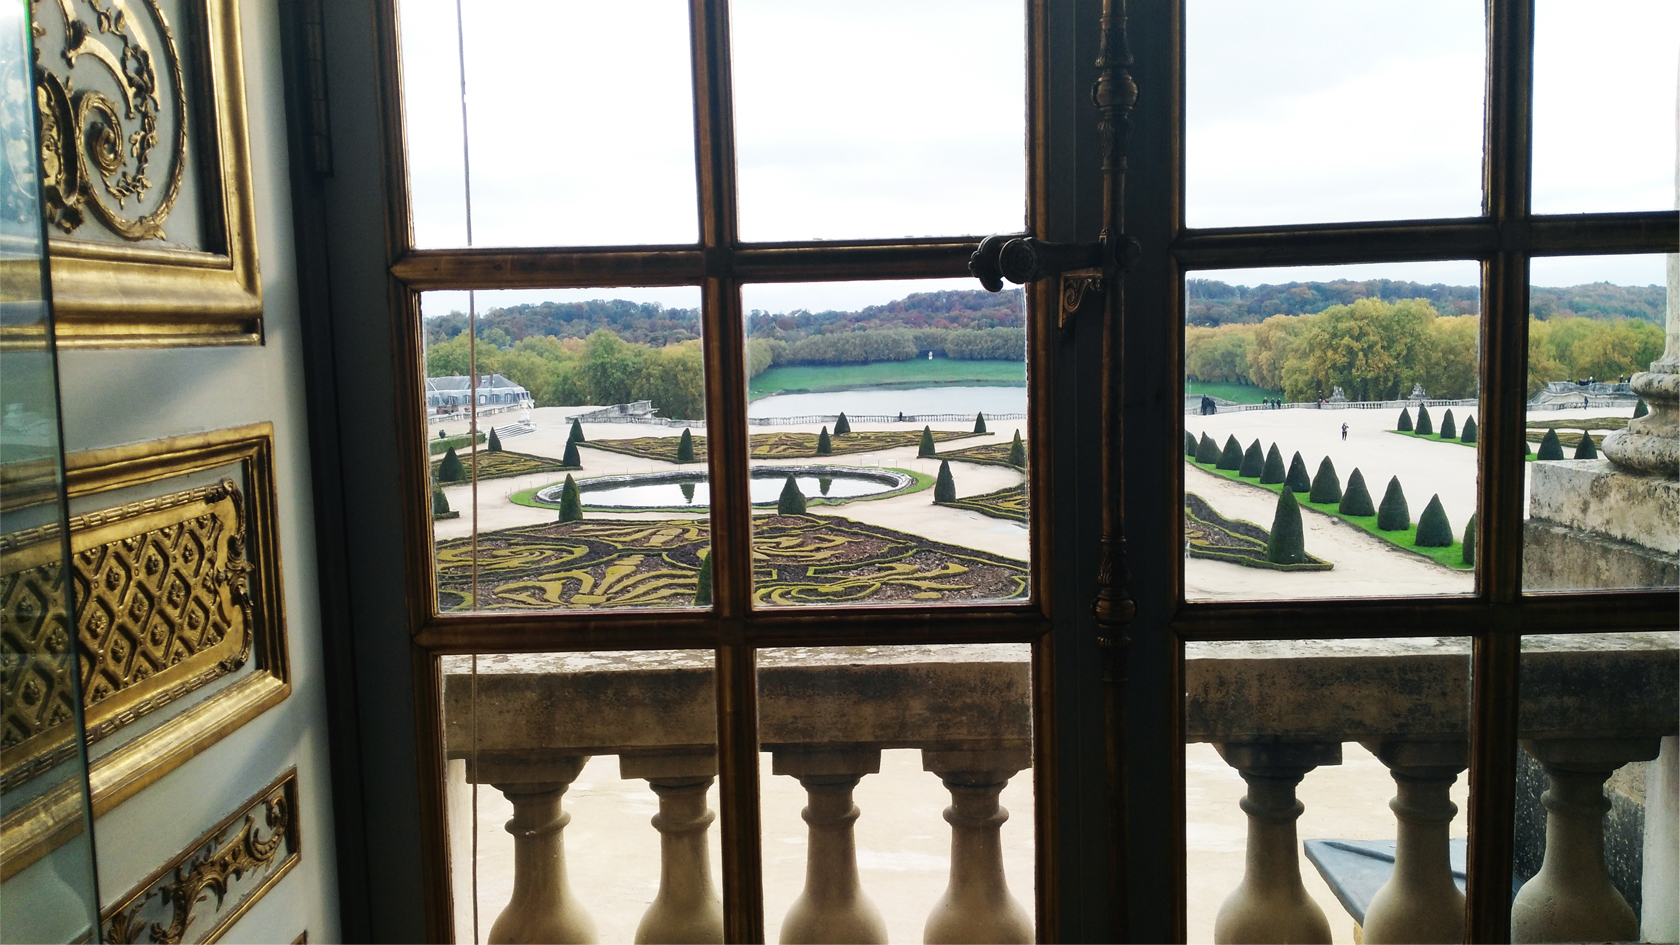 Palace of Versaille secret rooms tour